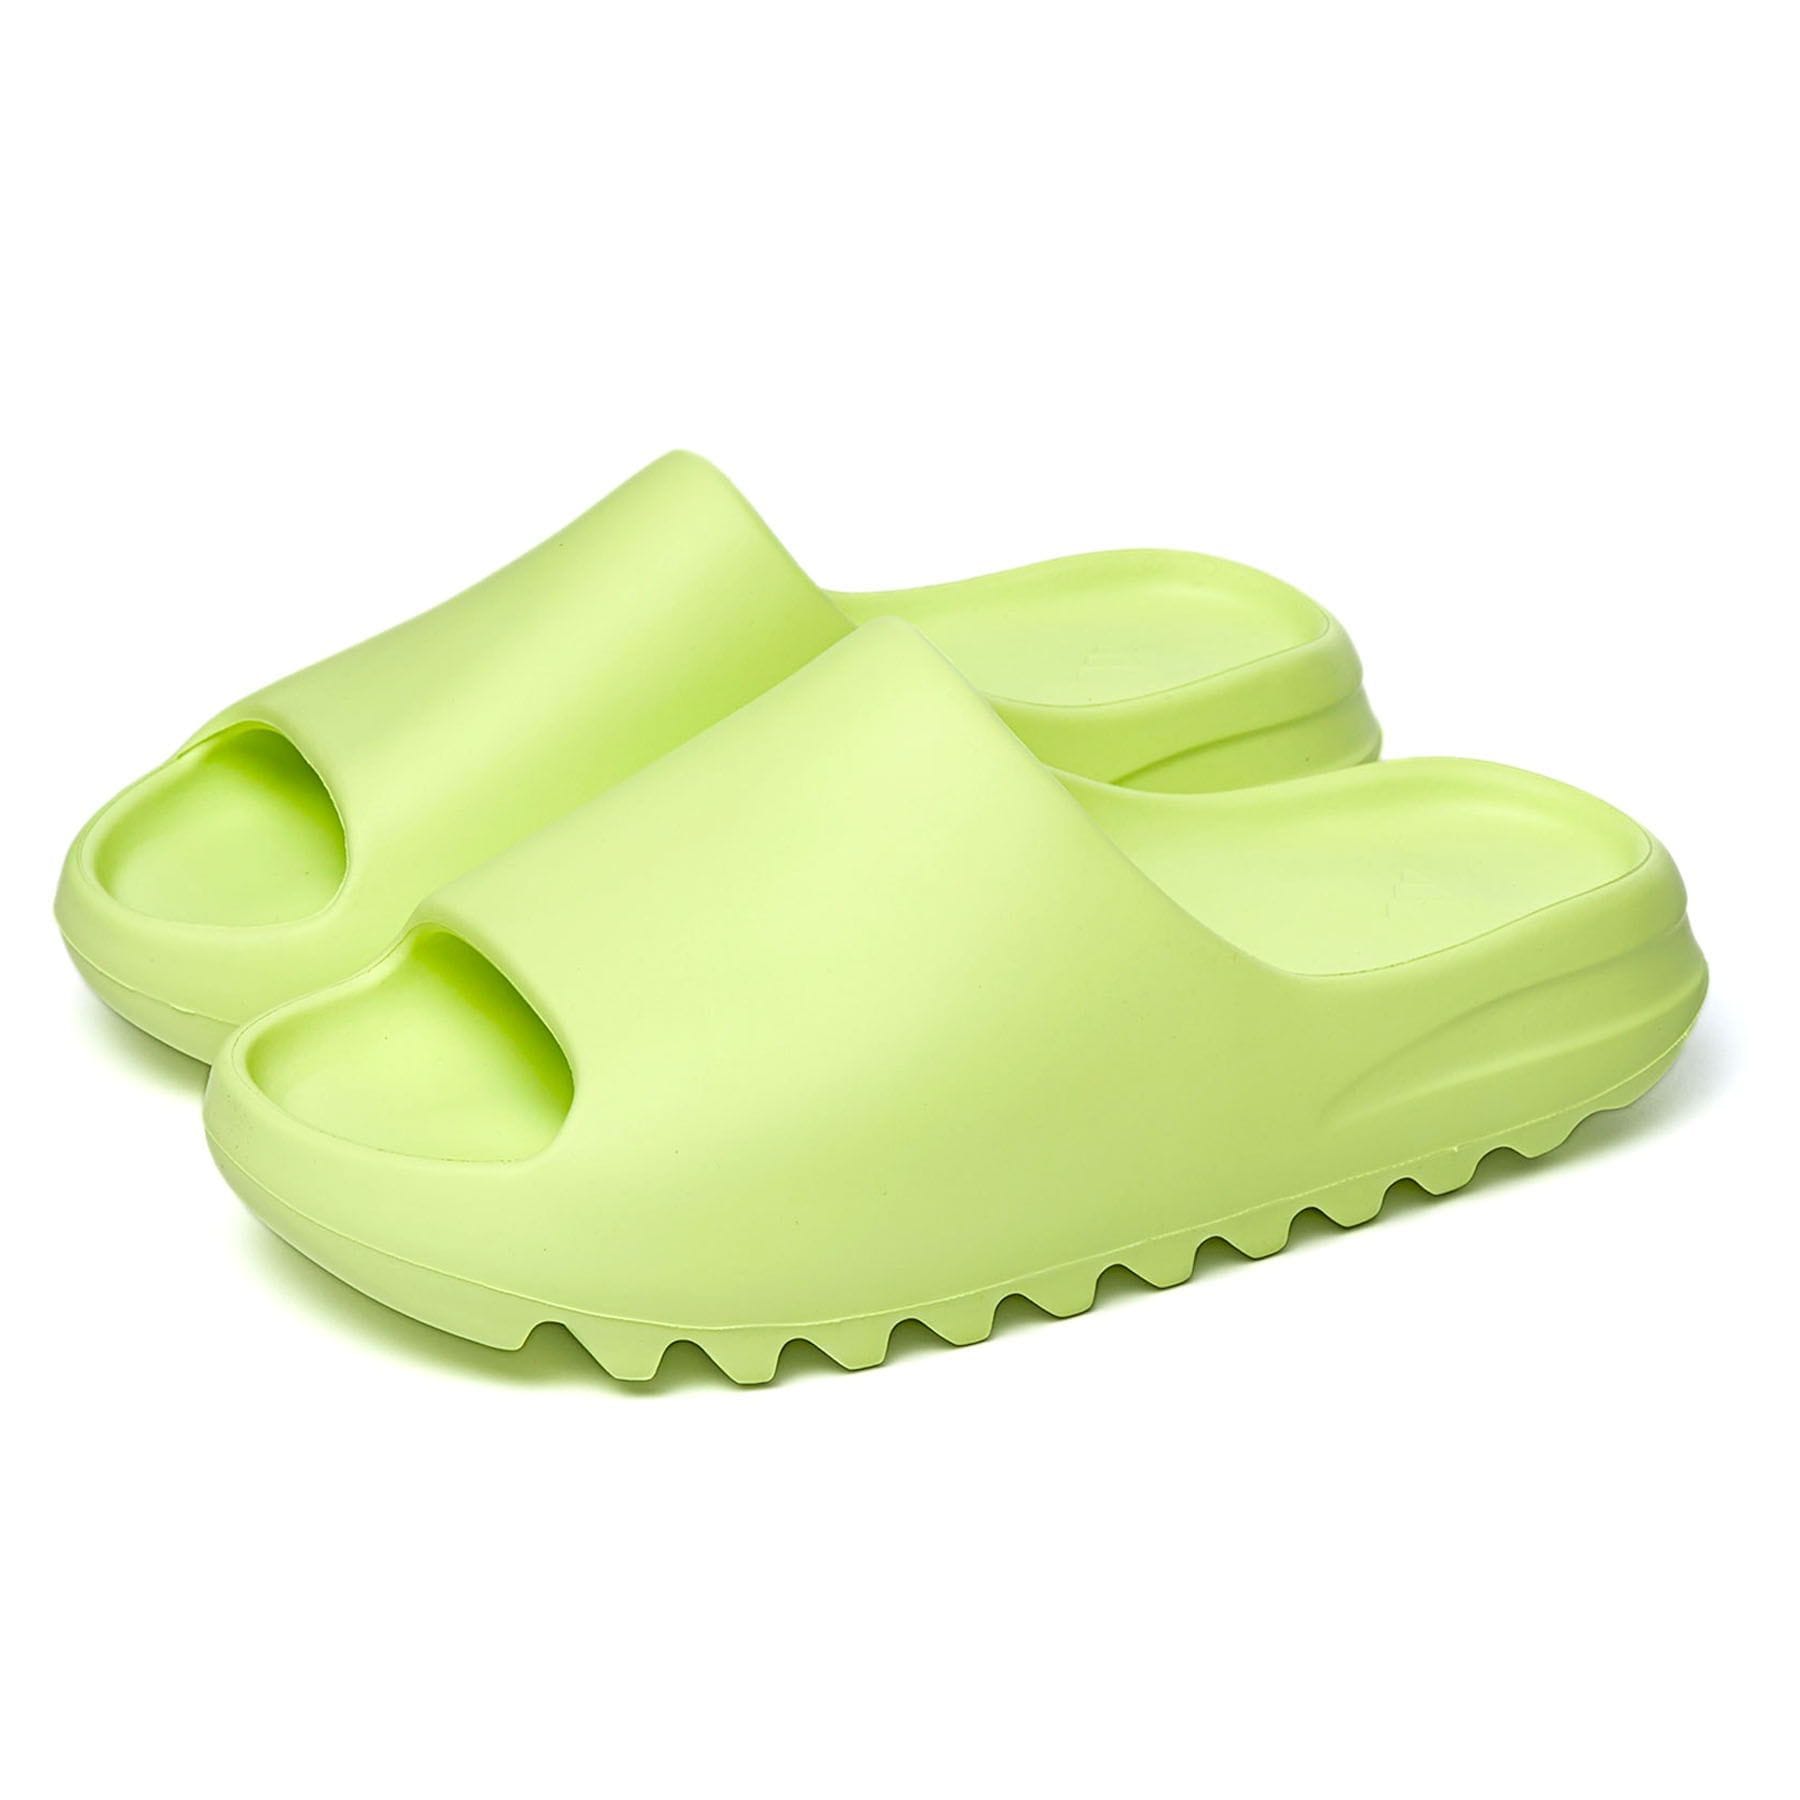 adidas YEEZY Slide Glow Green